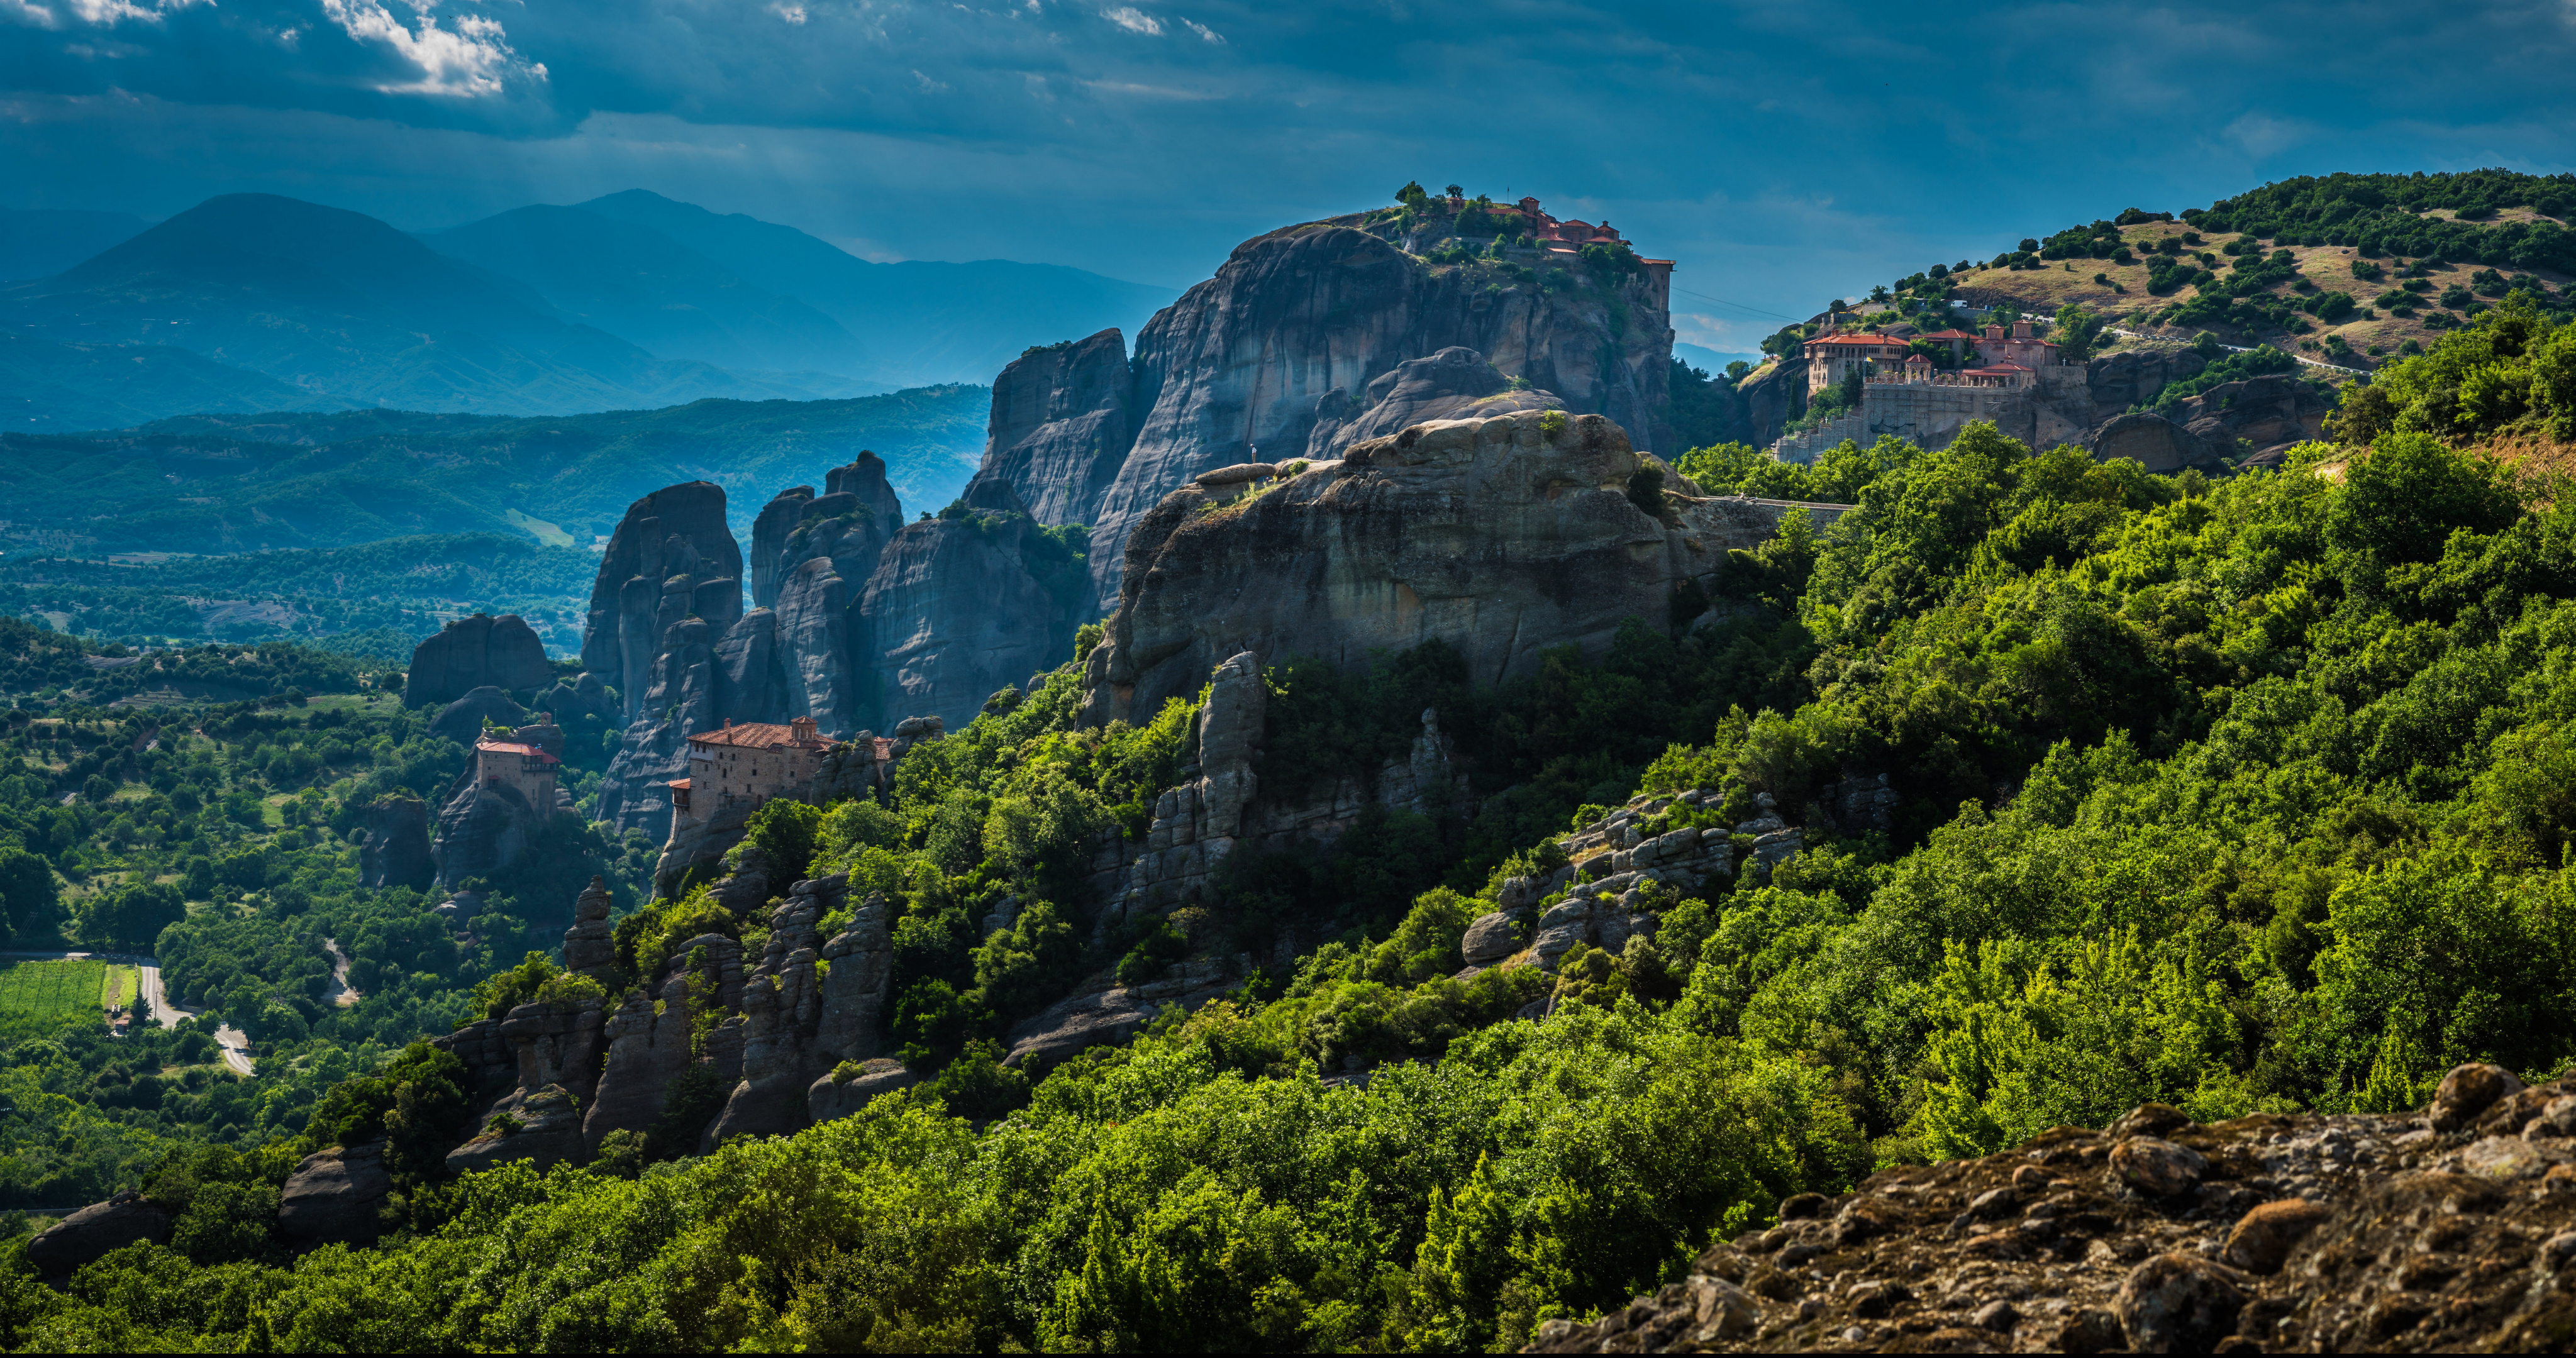 Обои на рабочий стол Греция, Meteora, скалы, горы, природа, скала,  утес, лето